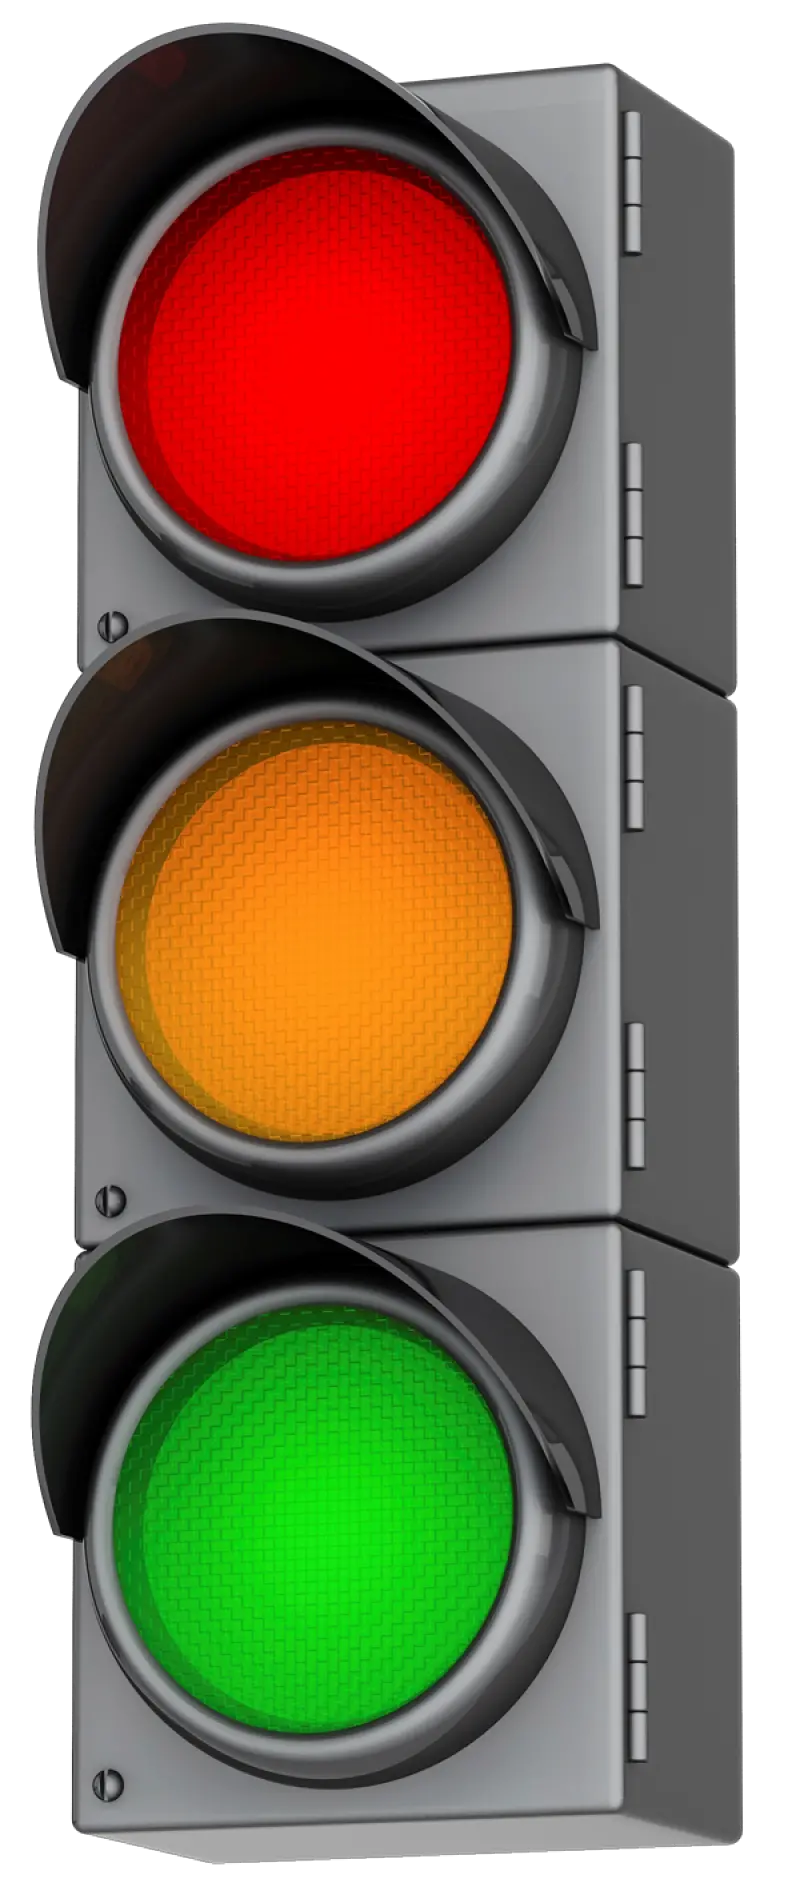 Traffic Light Png Images Transparent Lights Pngs 6 Cartoon Picture Of Traffic Lights Lights Png